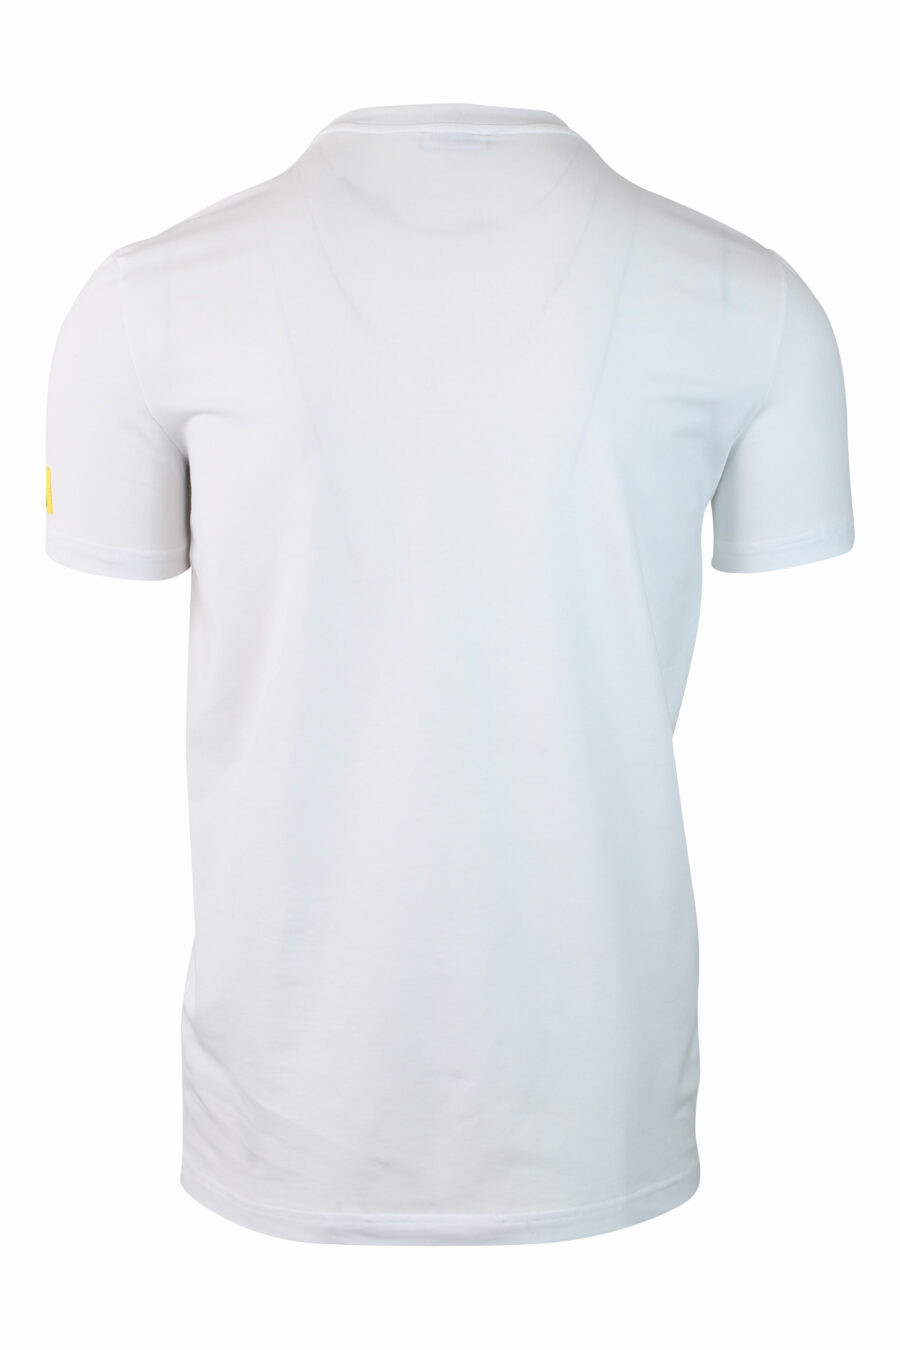 Camiseta blanca con minilogo parche "icon" amarillo en manga - IMG 0143